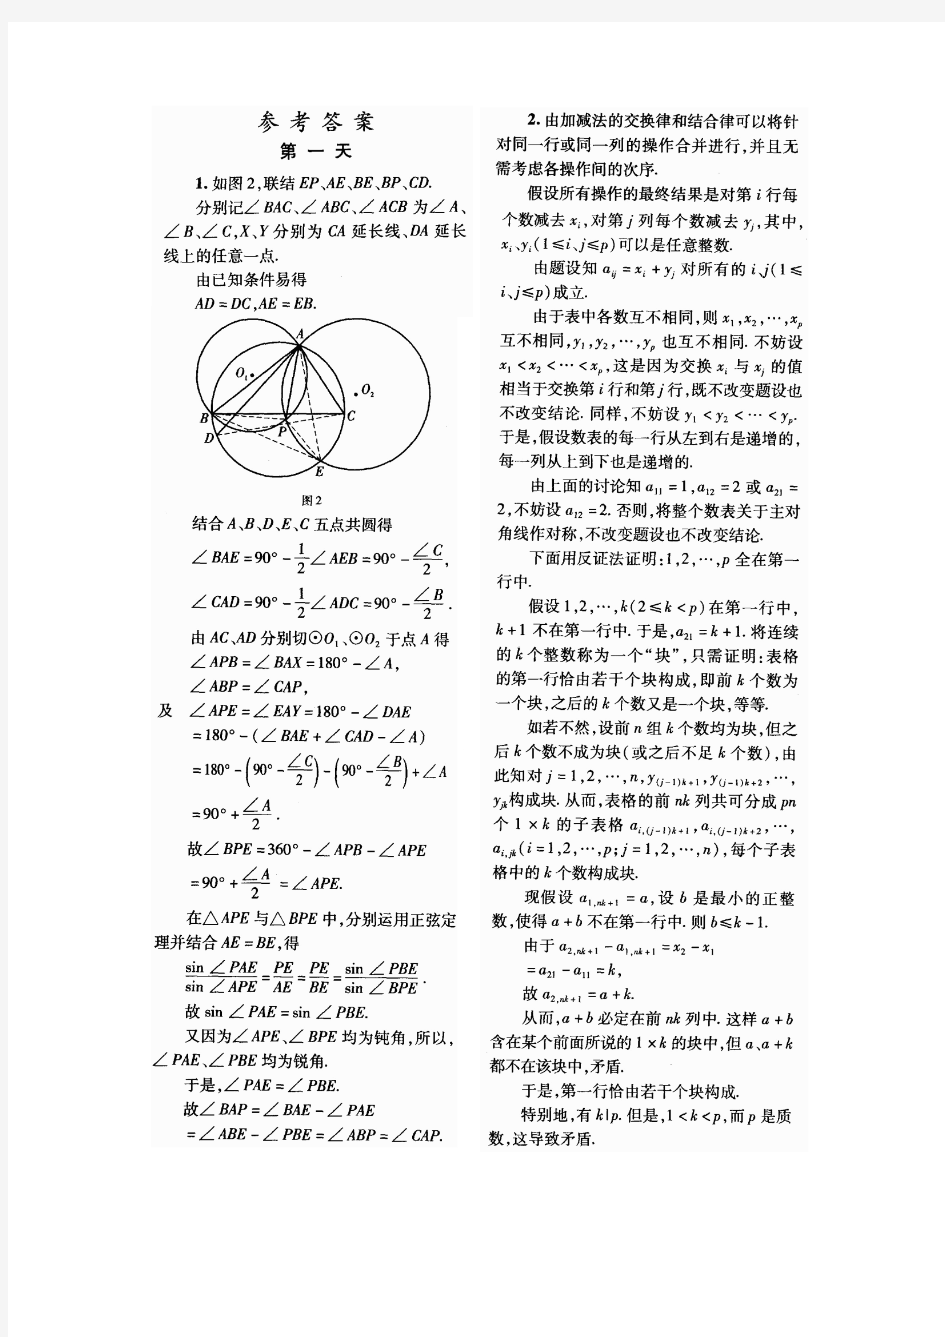 2012年中国数学奥林匹克(CMO)试题及答案